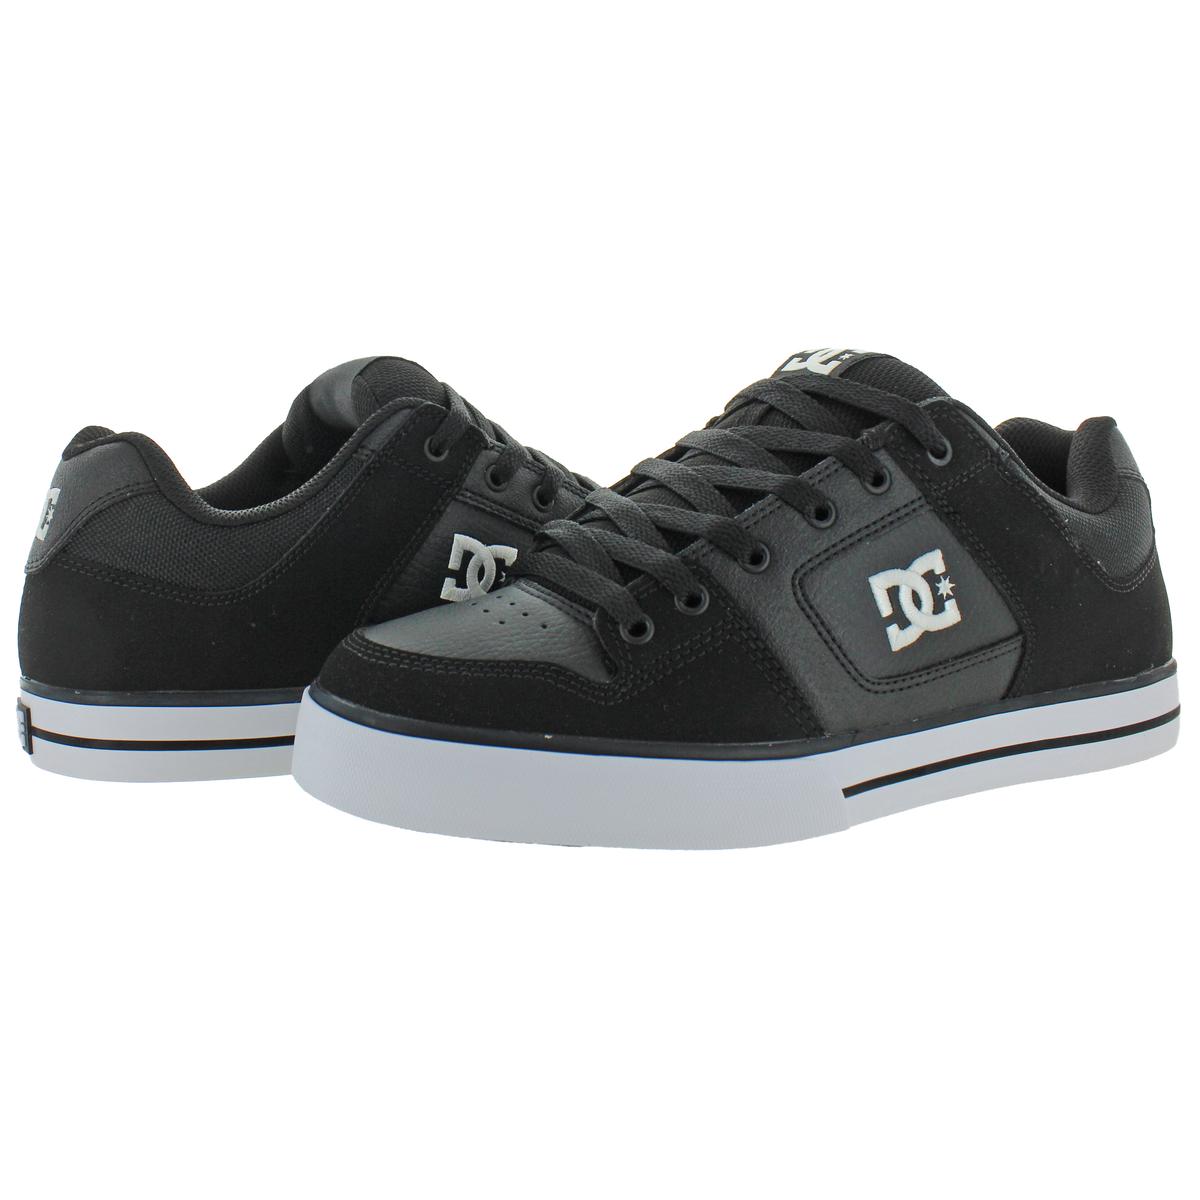 DC SHOES Pure Low-Cut Sneaker Freizeitschuhe Skateschuhe Leder Textil Schuhe 